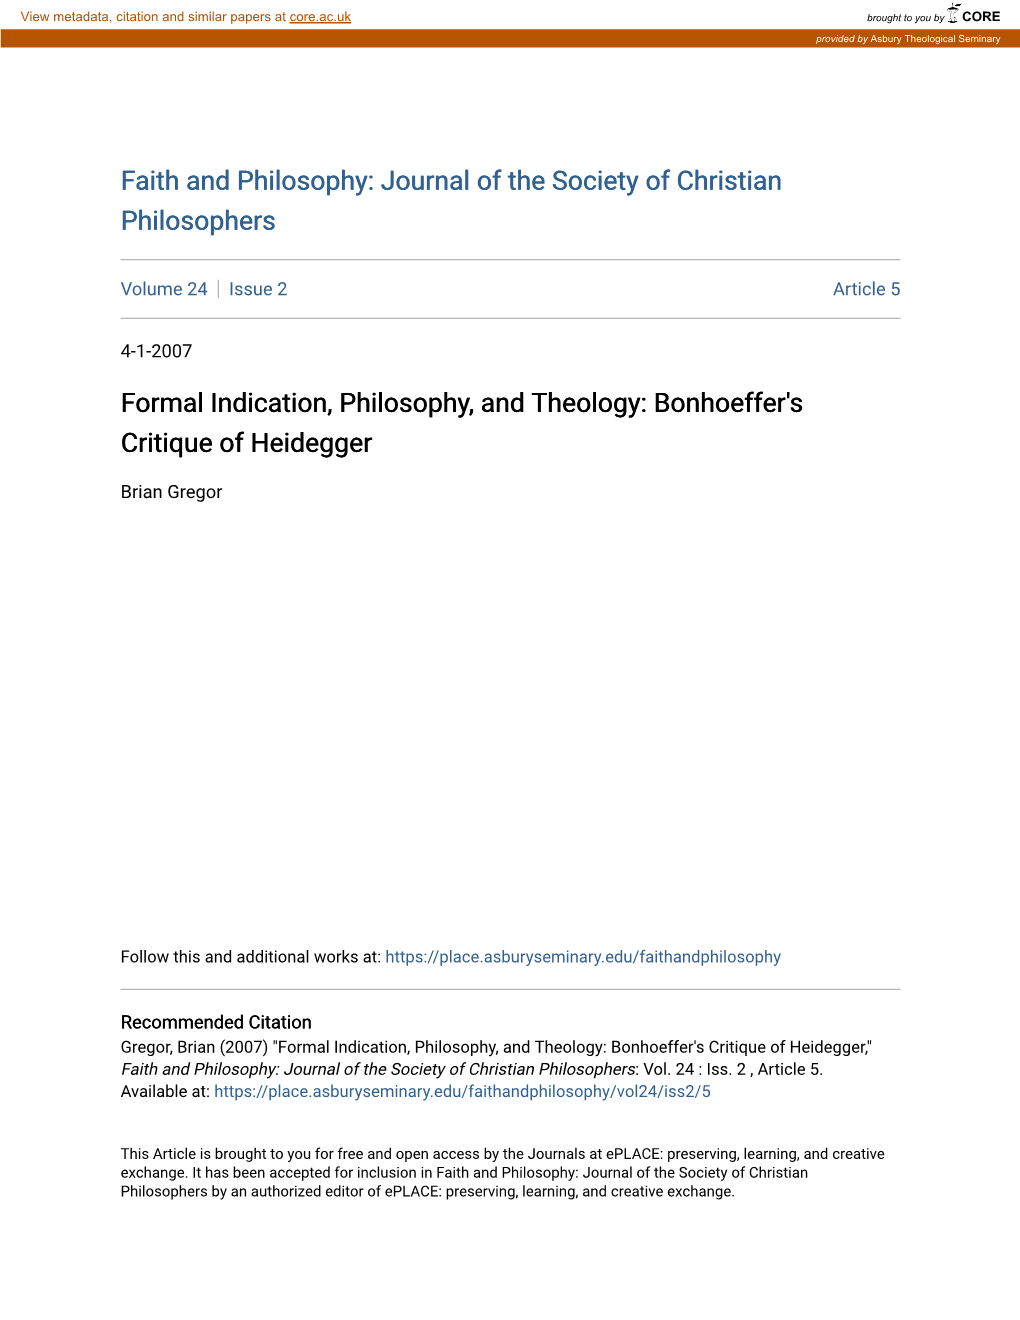 Bonhoeffer's Critique of Heidegger